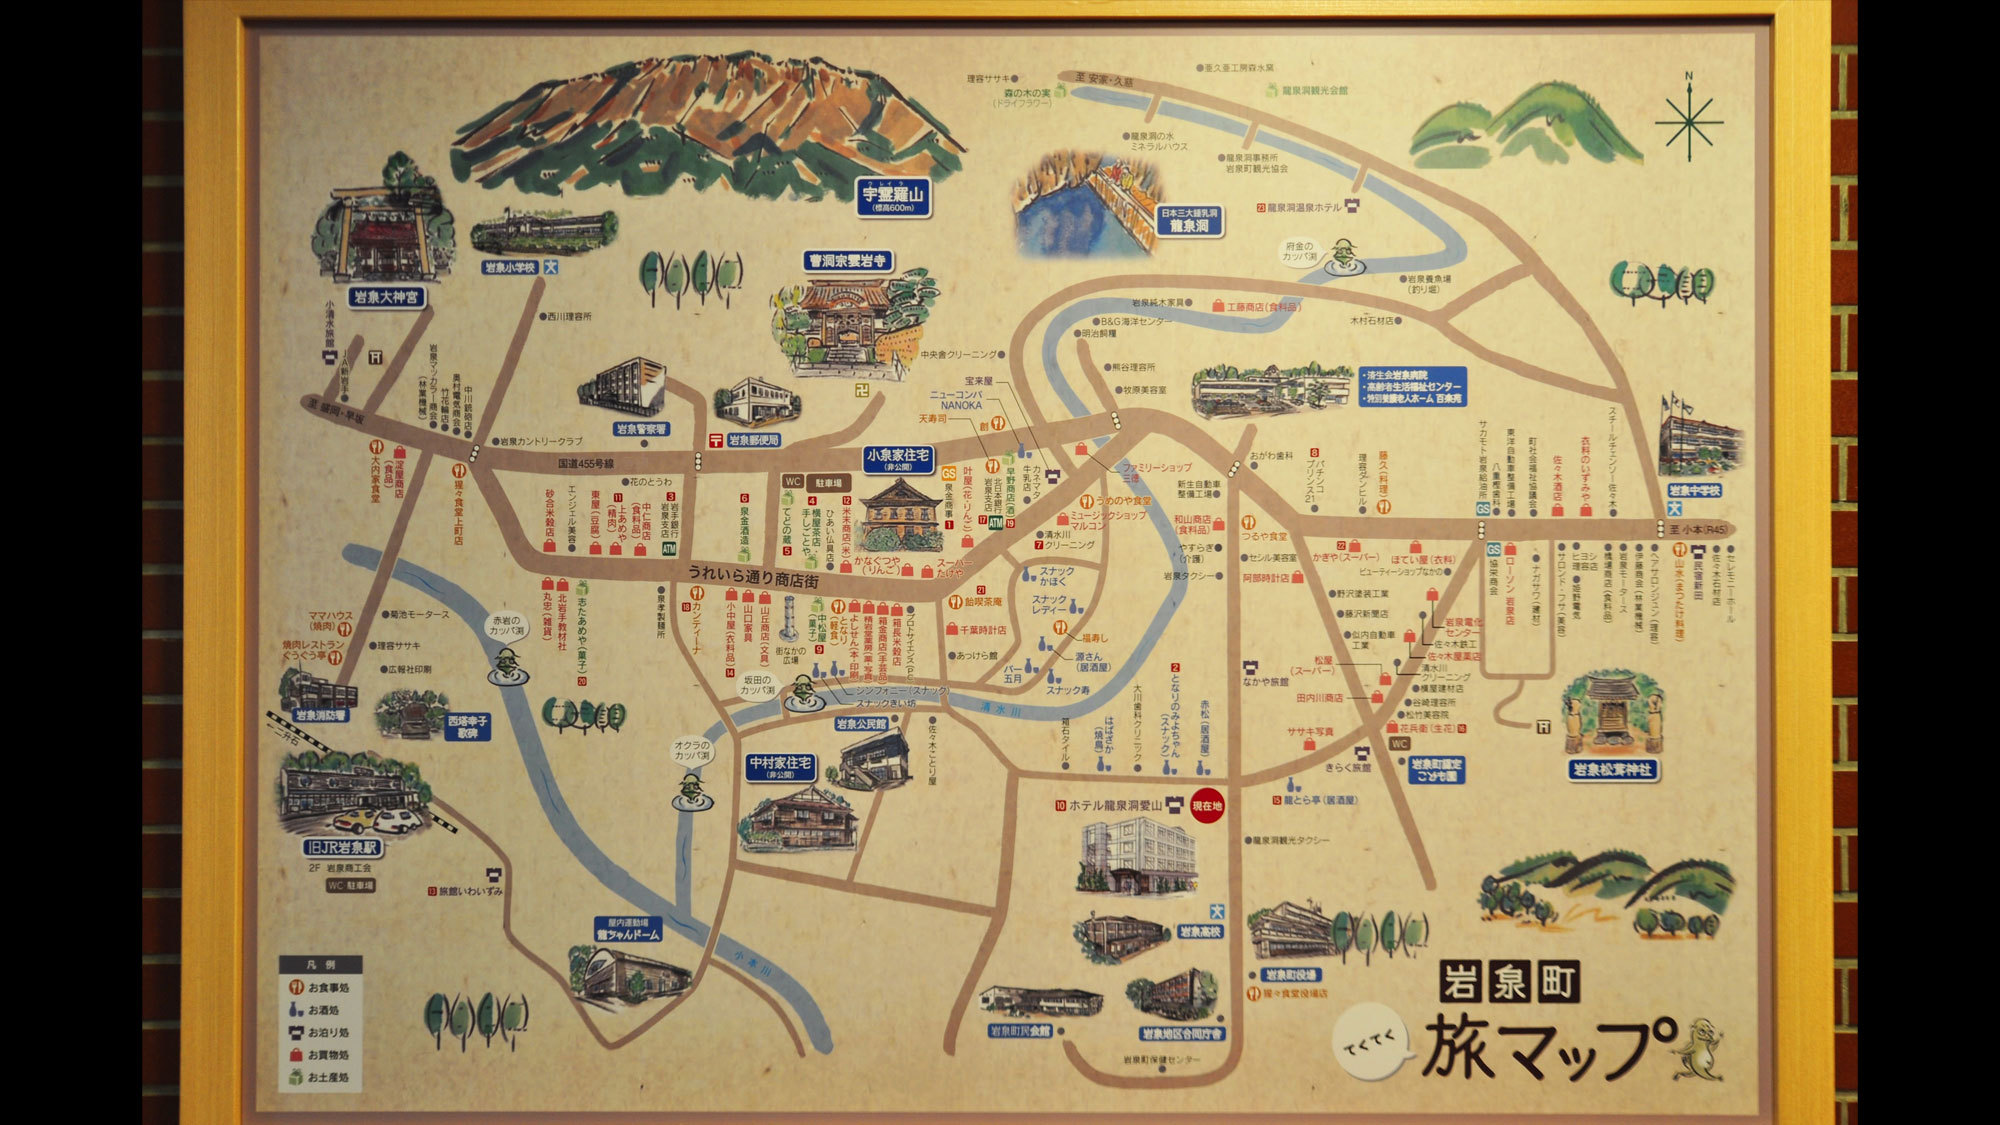 【フロント・ロビー】岩泉町の観光スポットのマップが掲げてあります。